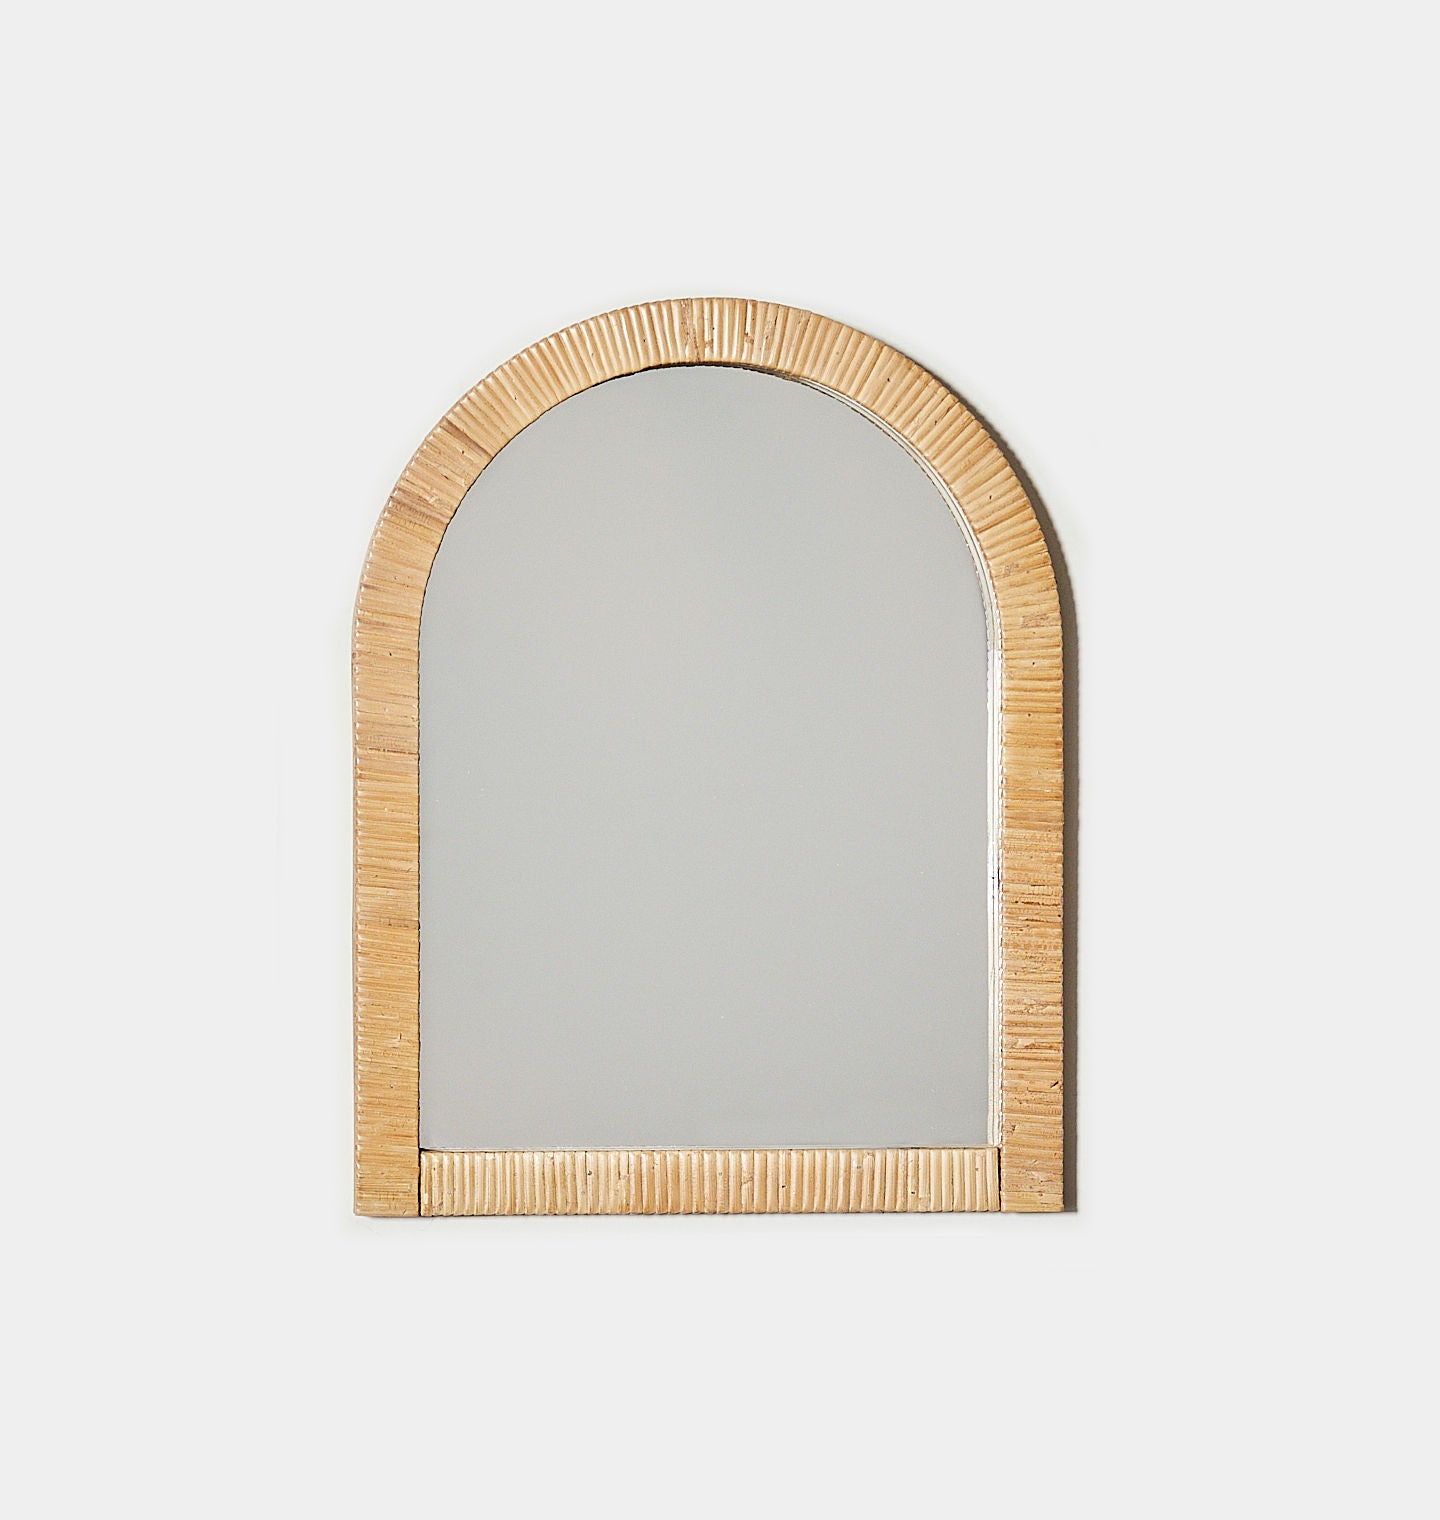 Vintage Heart Shaped Wicker Wall Mirror